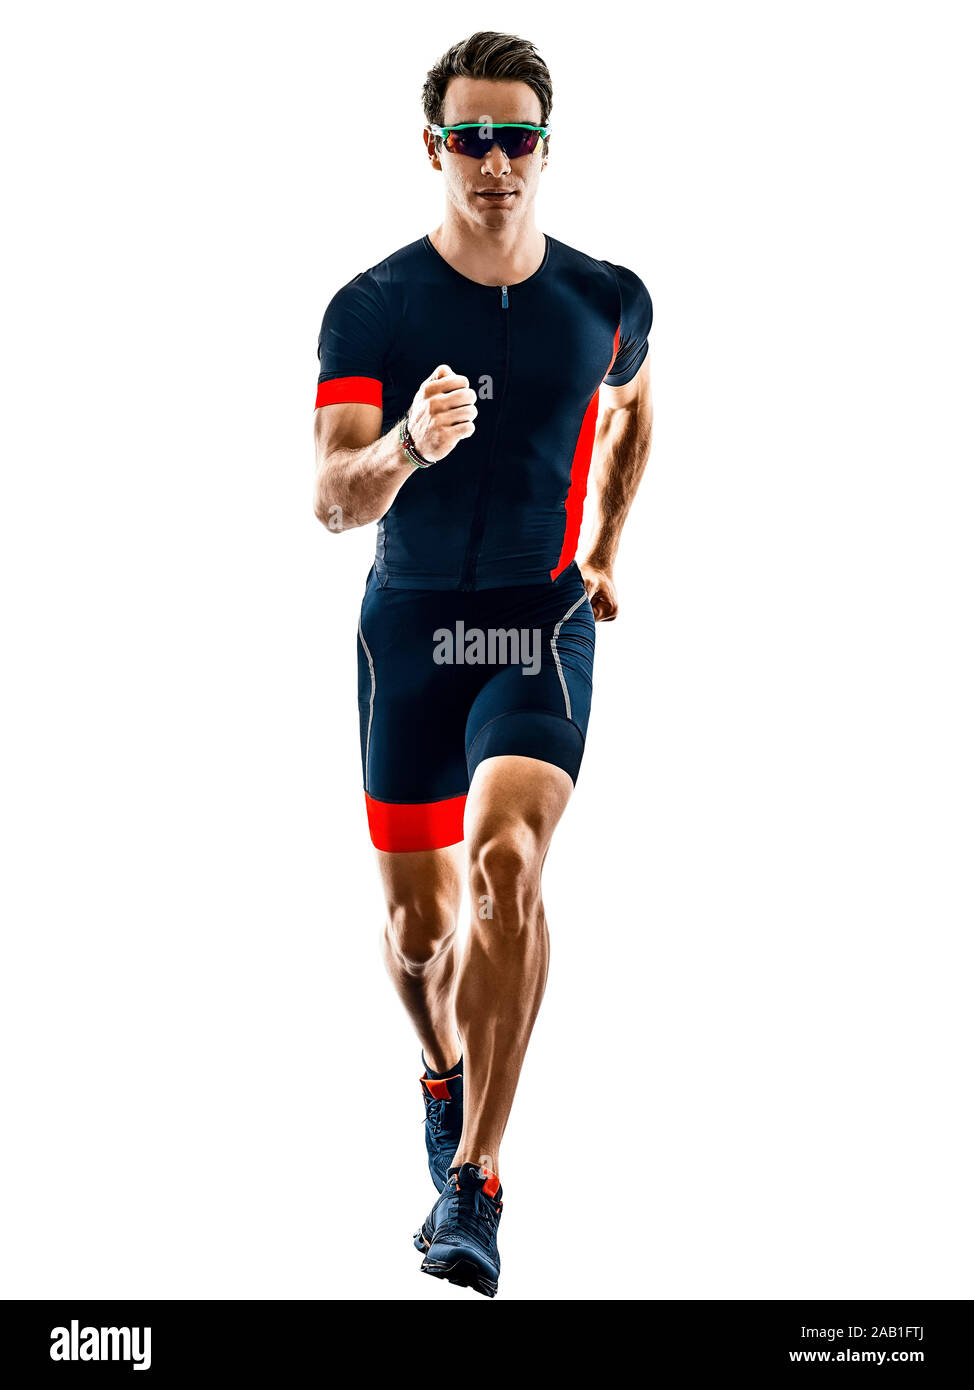 triathlete triathlon runner running in silhouette isolated  on white background Stock Photo